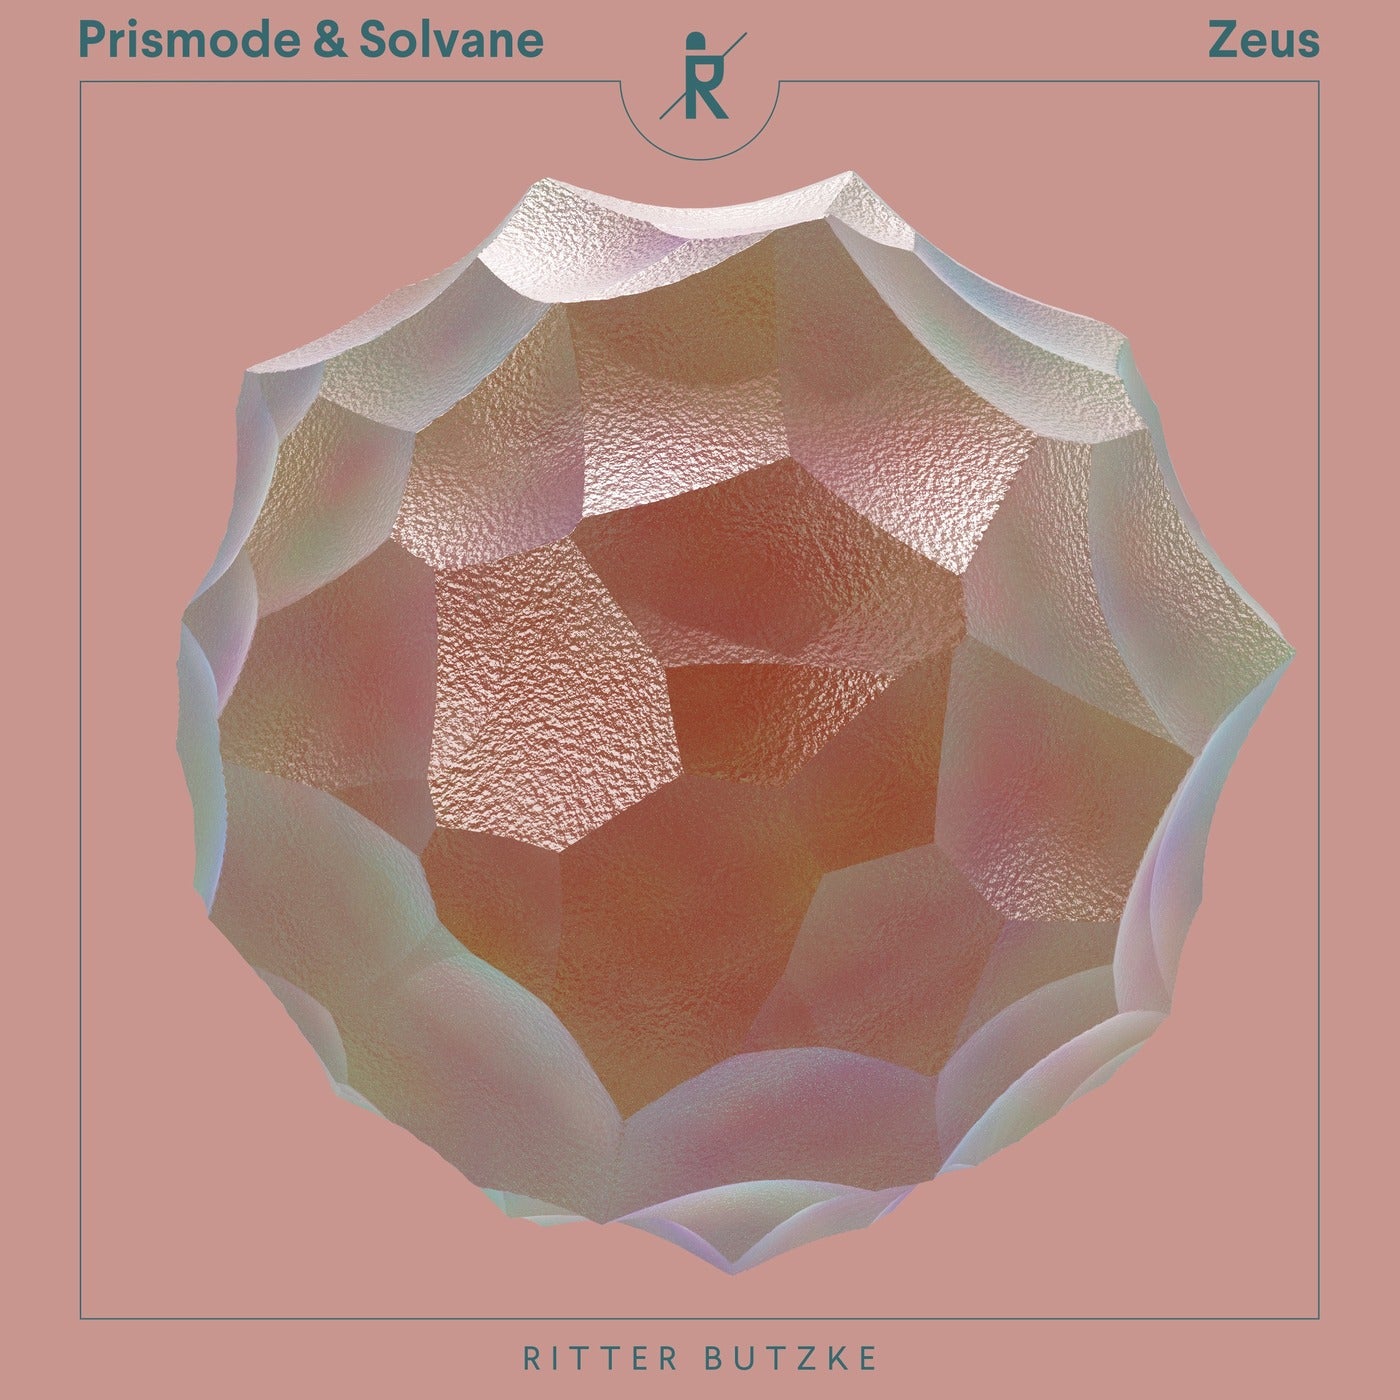 Solvane, Prismode - Zeus (Original Mix)